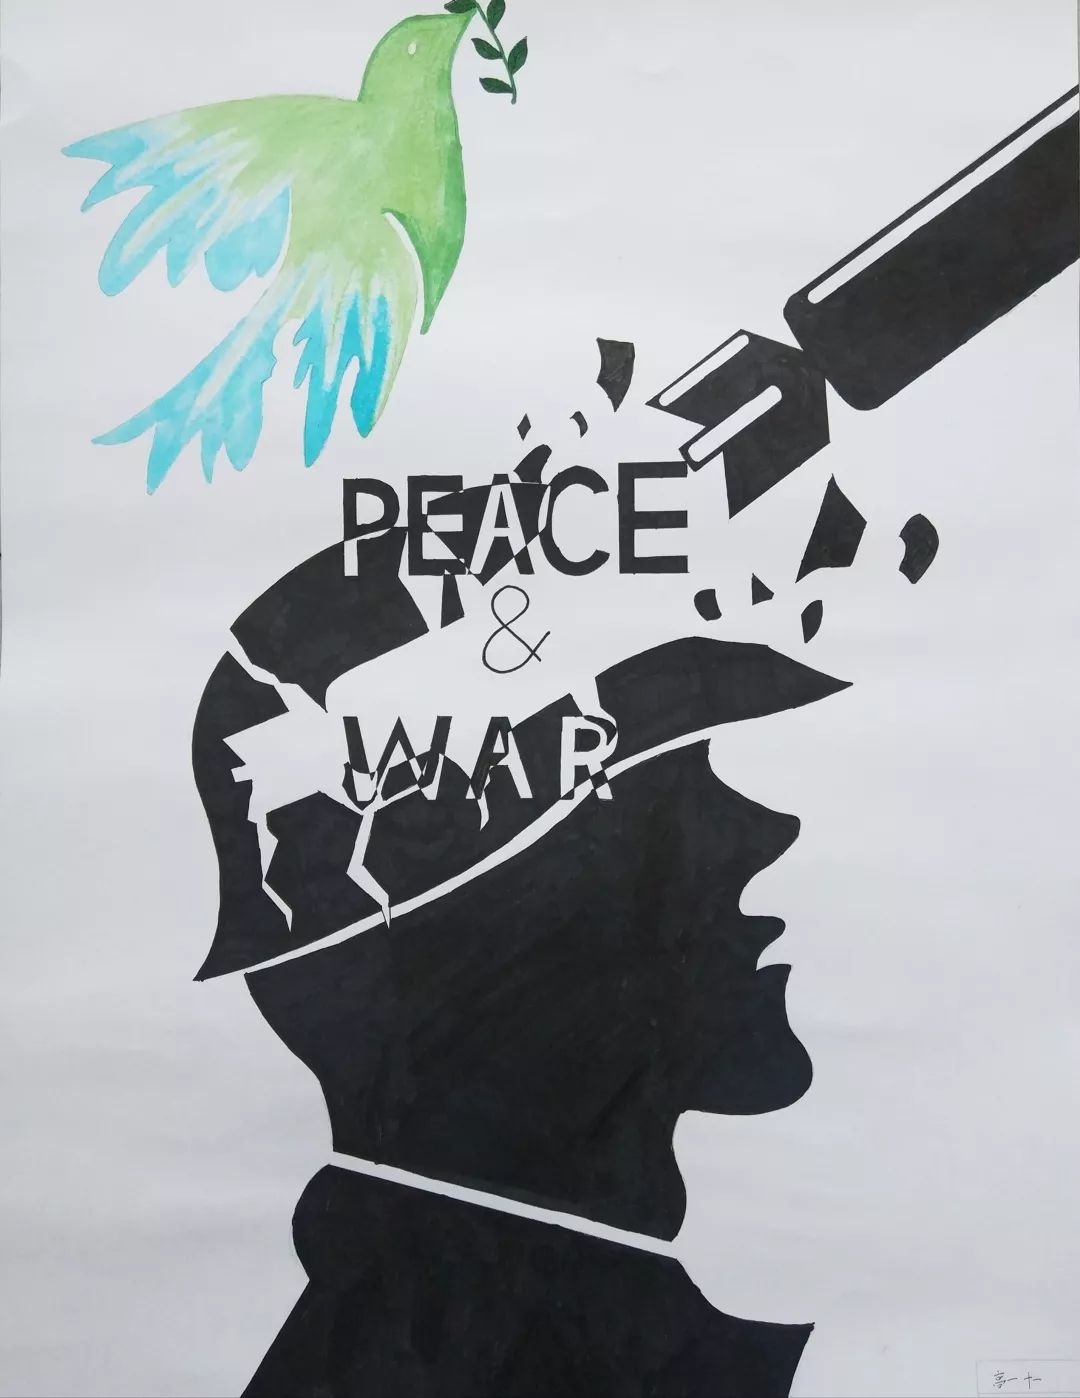 【聊聊美术那些事】(32)战争与和平 ——许昌华老师带